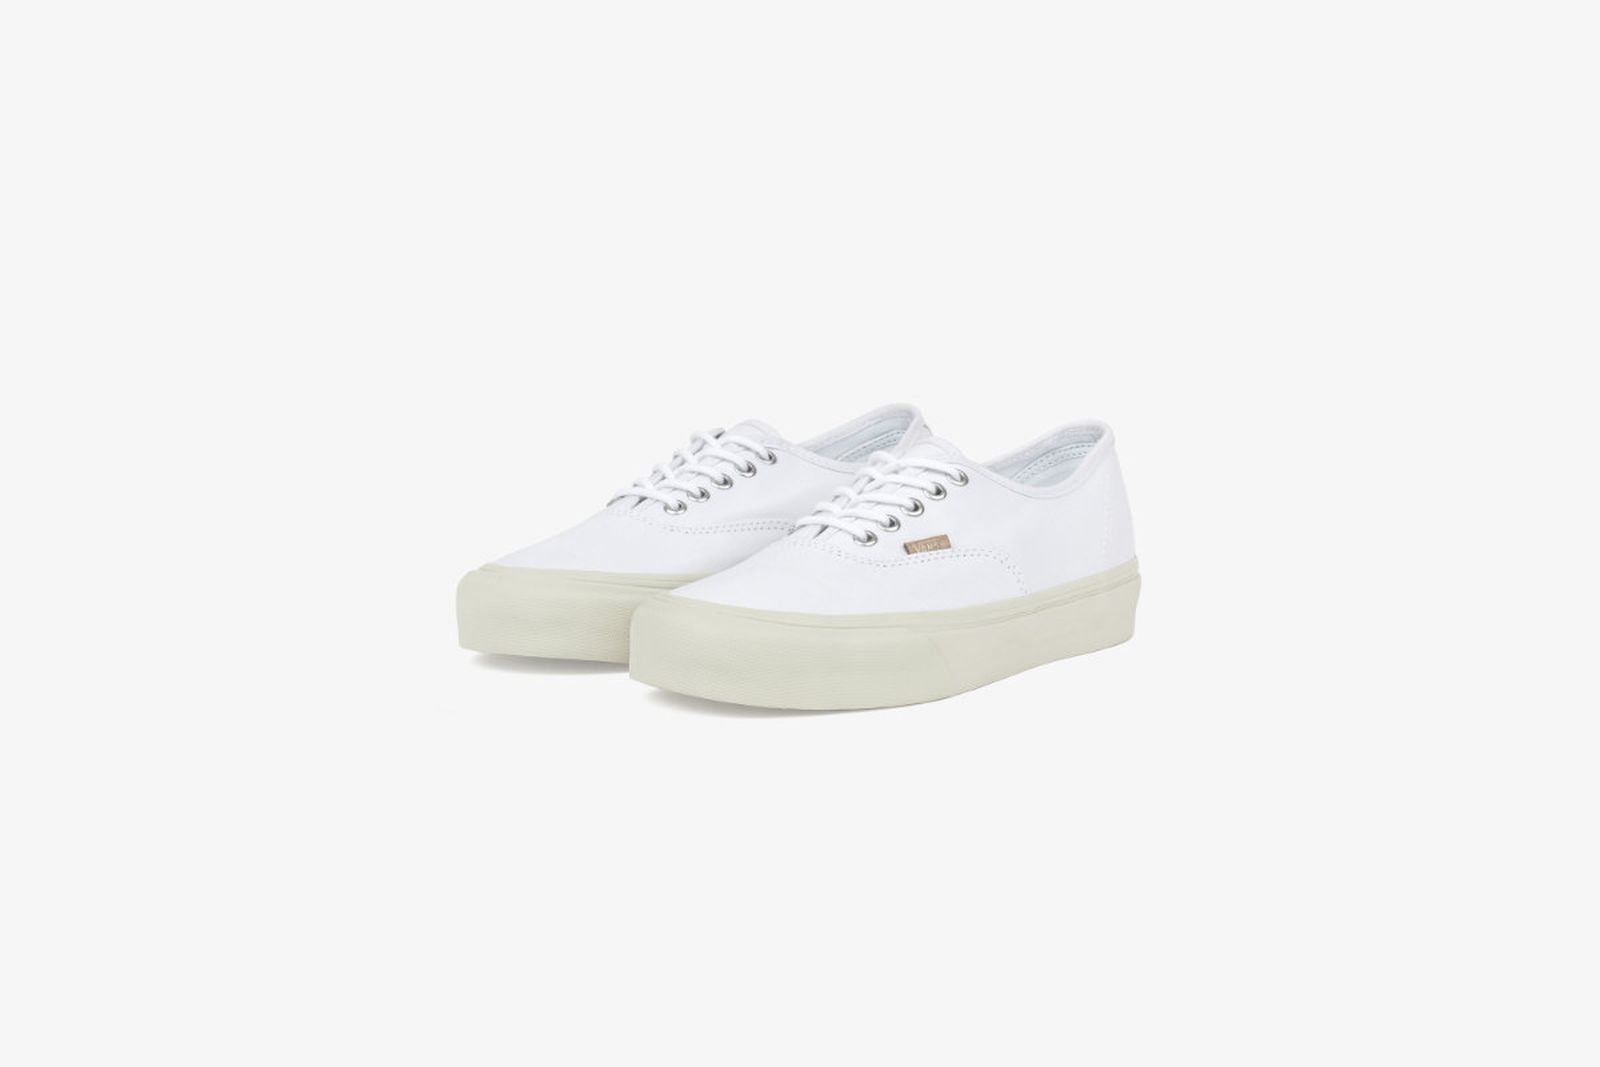 JJJJound & Vans' SS23 Sneakers Wear Crisp Summer Whites